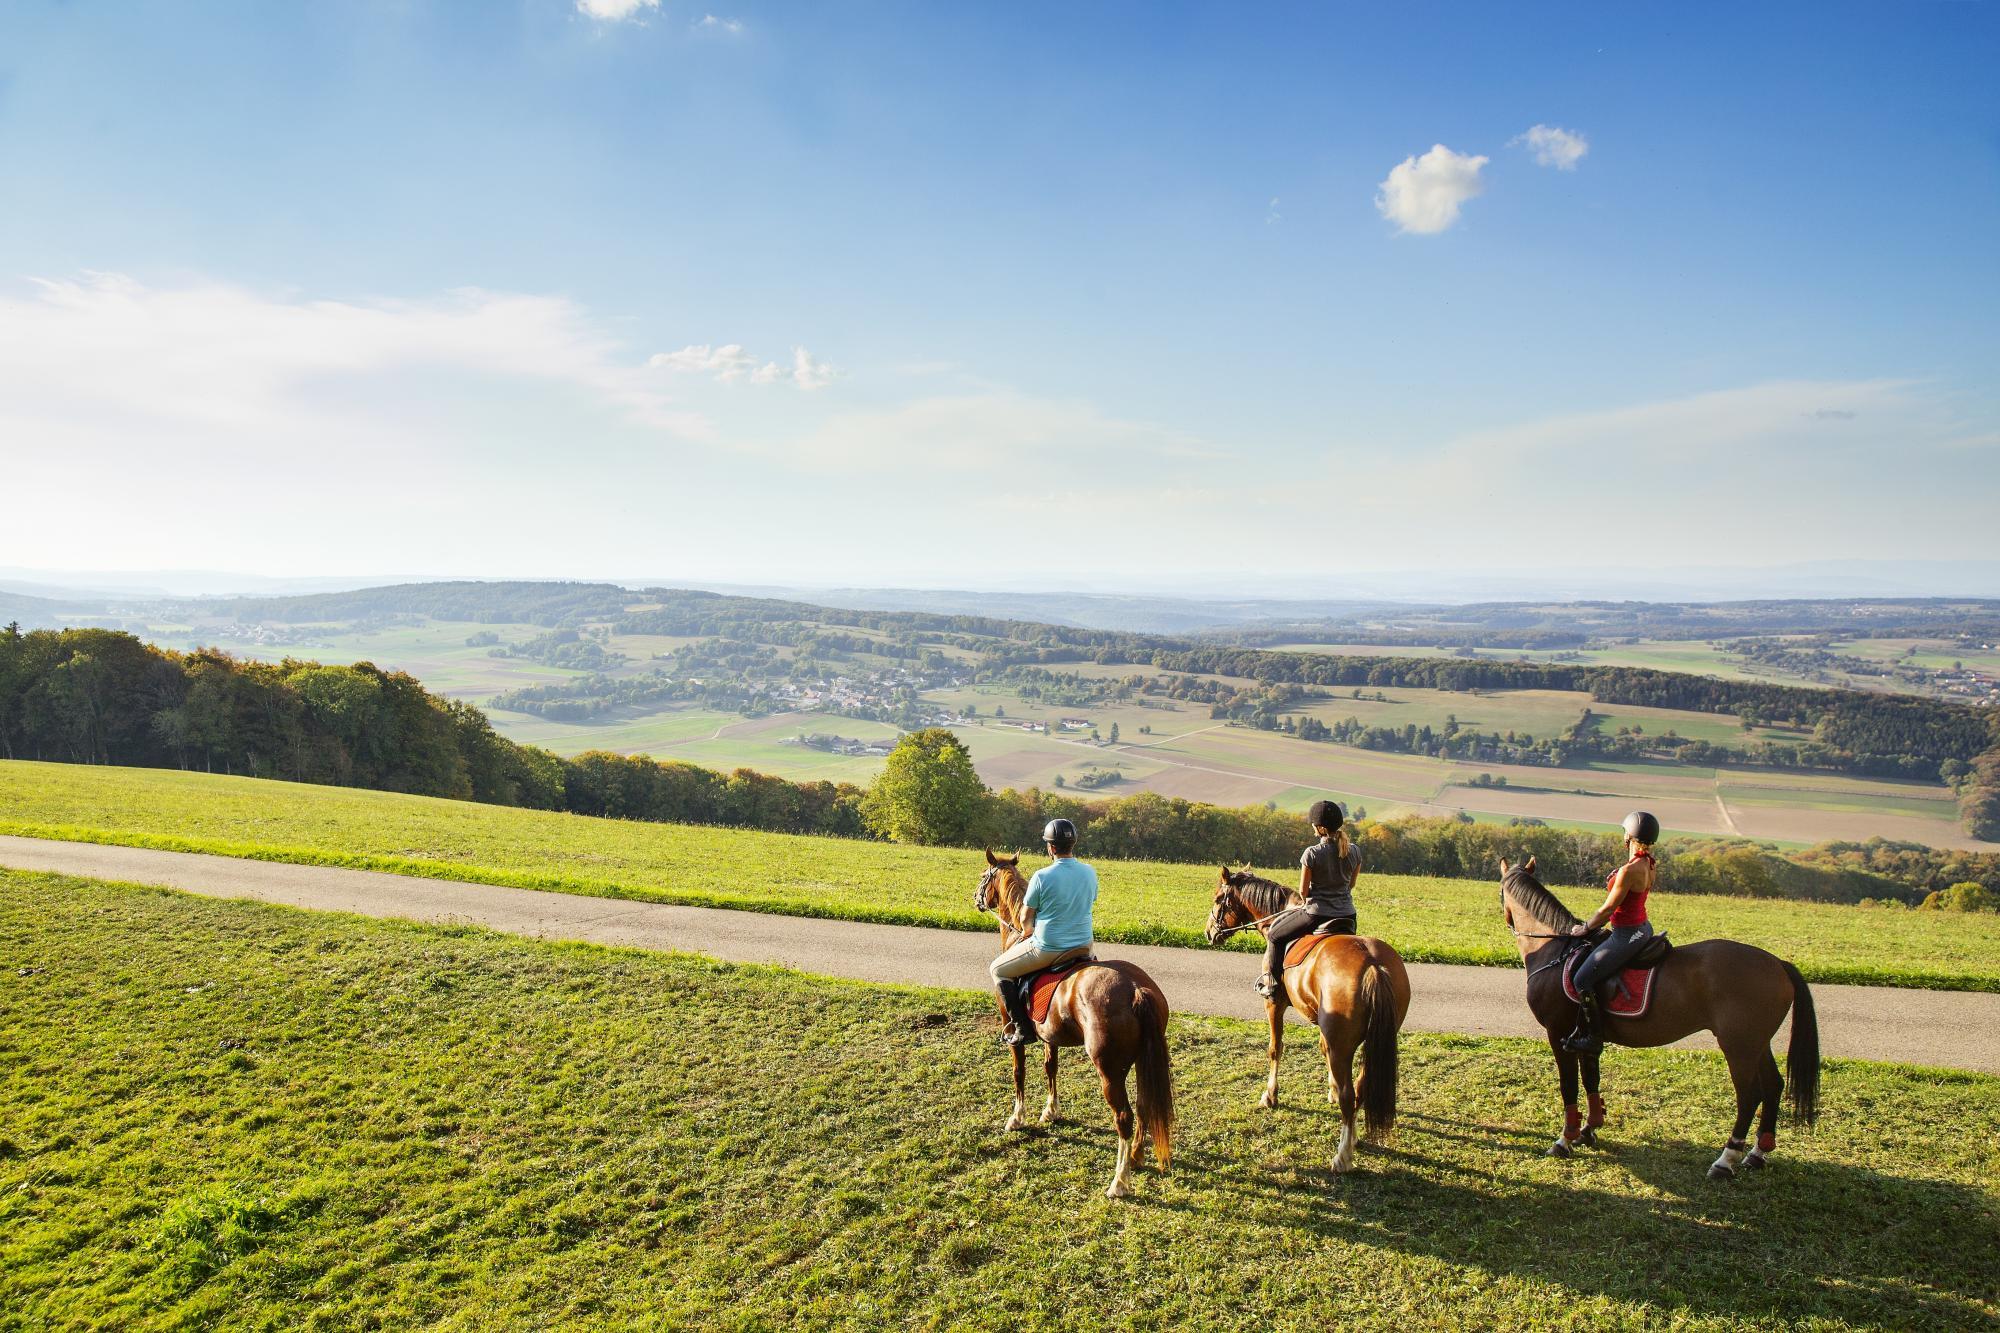 Le projet "Tous en selle" offre une balade gratuite à cheval aux personnes séjournant au moins deux jours dans le Jura, de début mai à fin octobre.